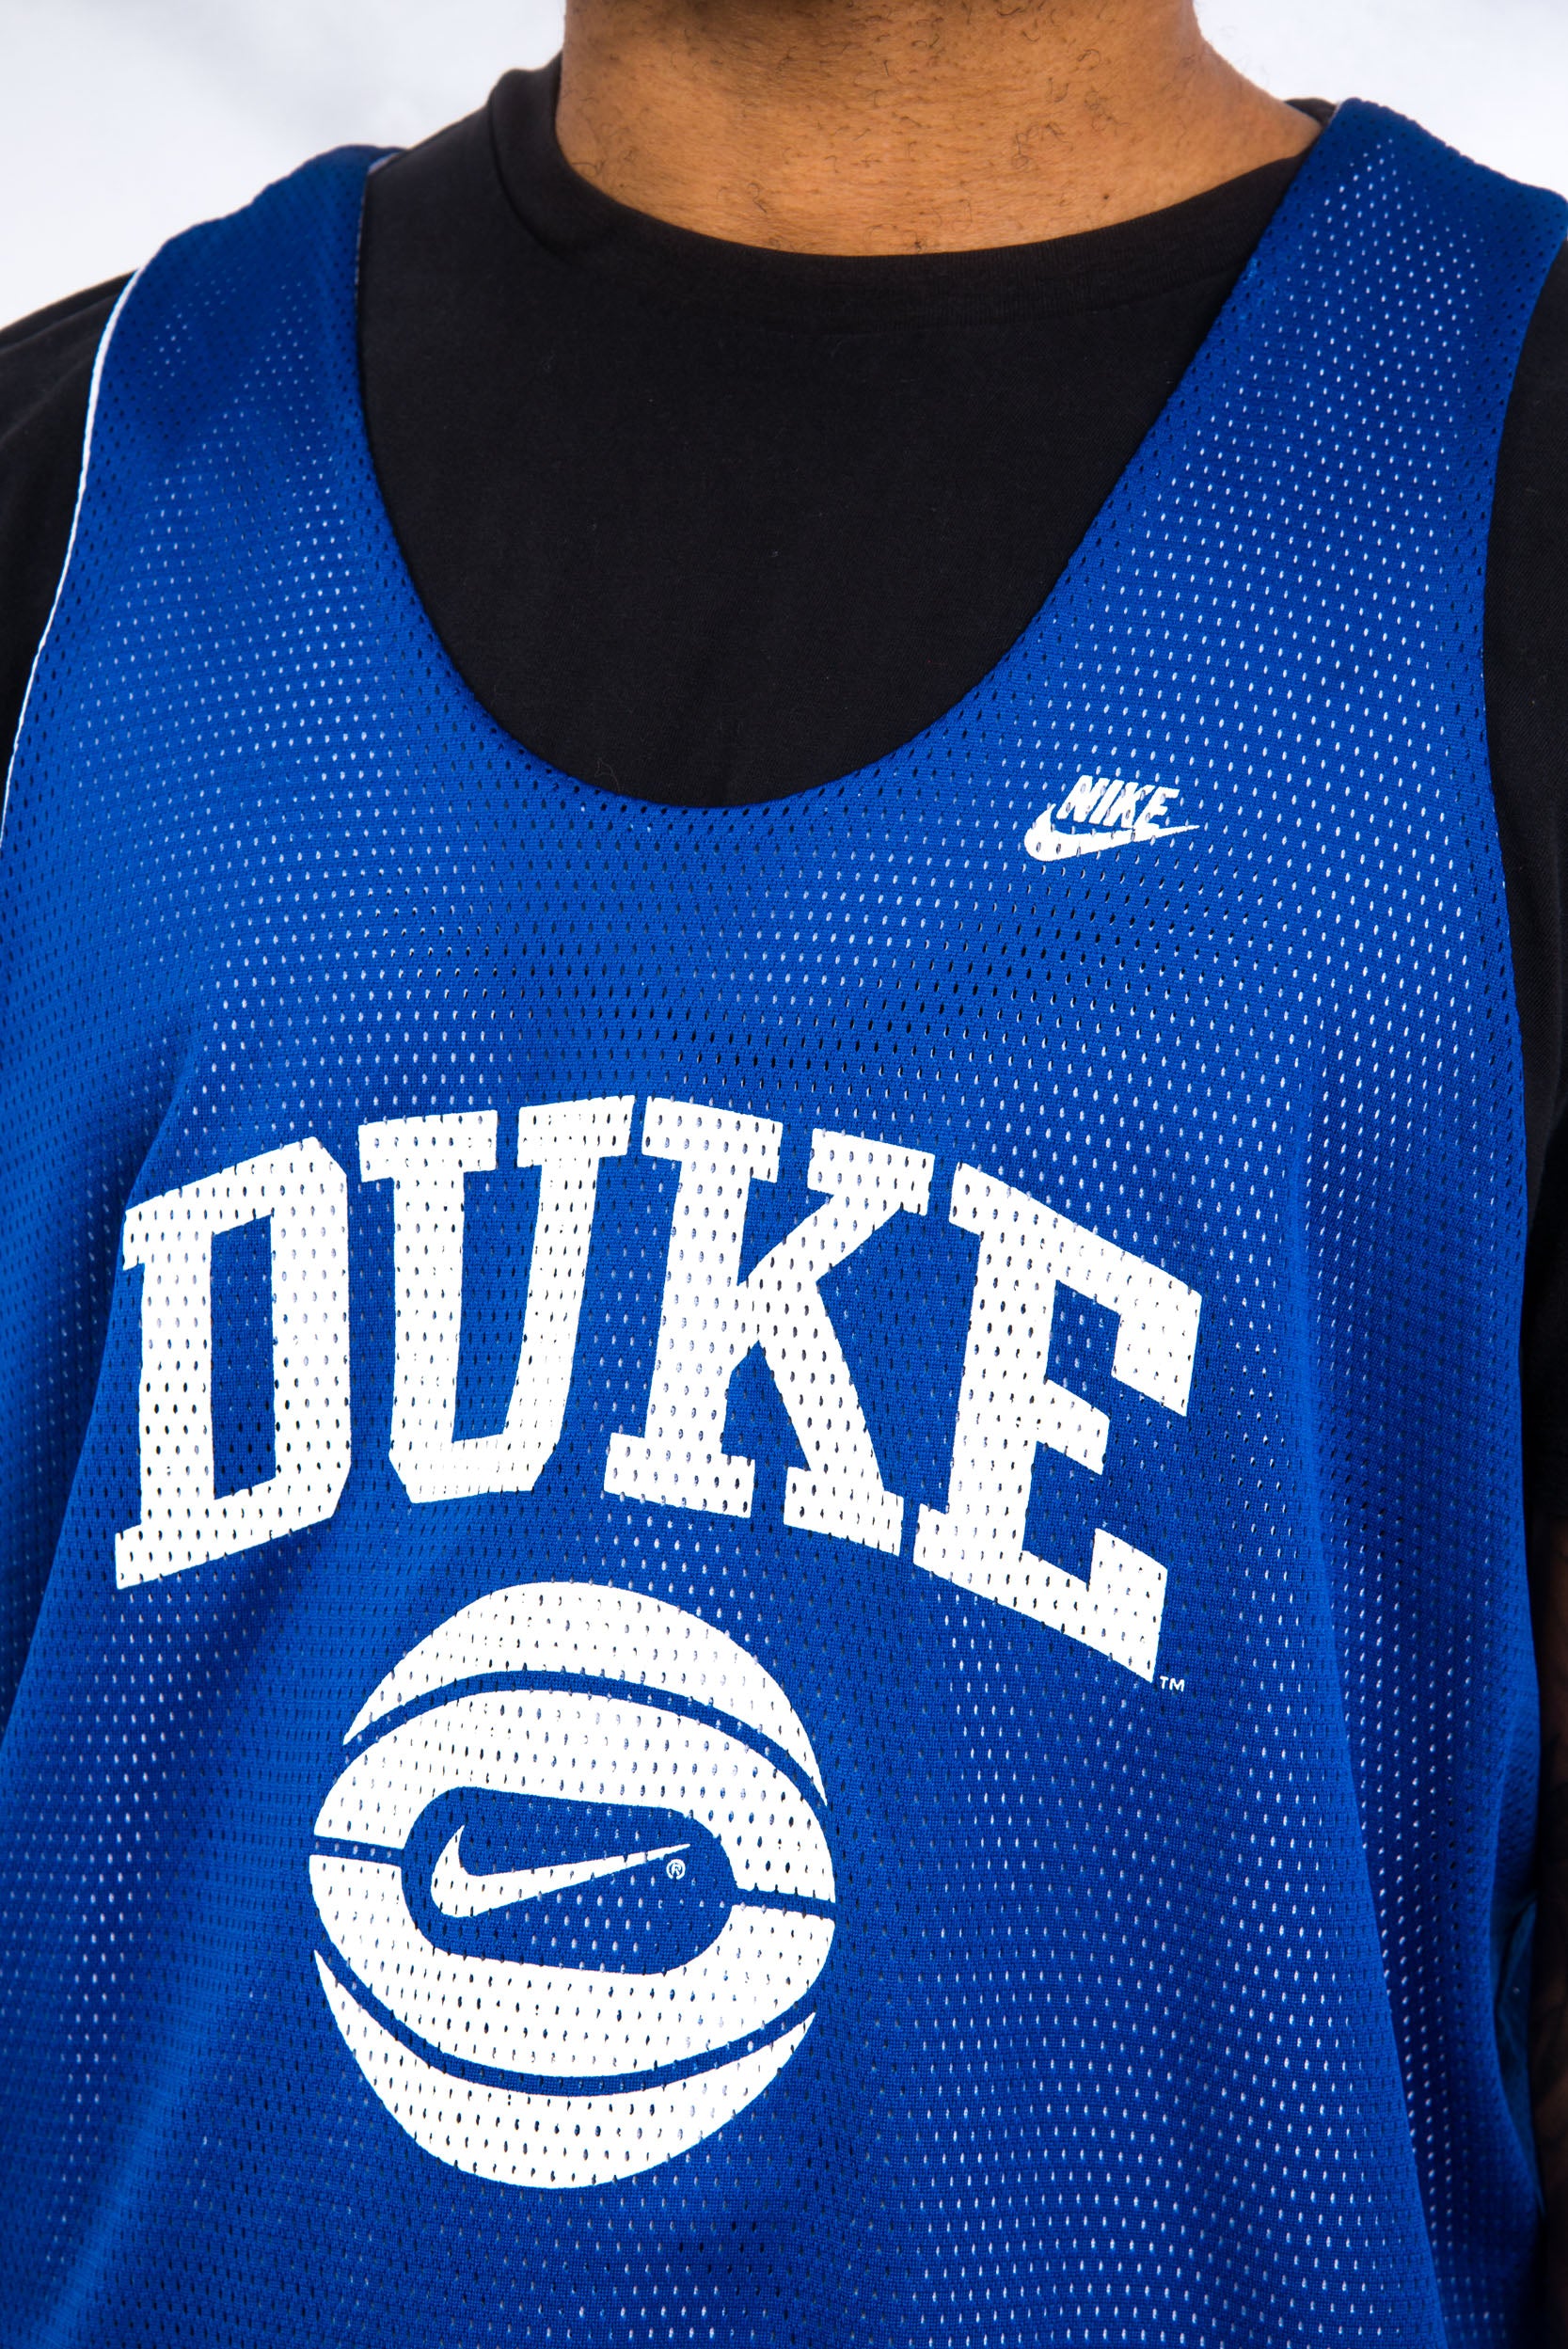 Nike Duke Blue Devils Basketball Reversible Jersey Men's Medium #00 Blue AV2128